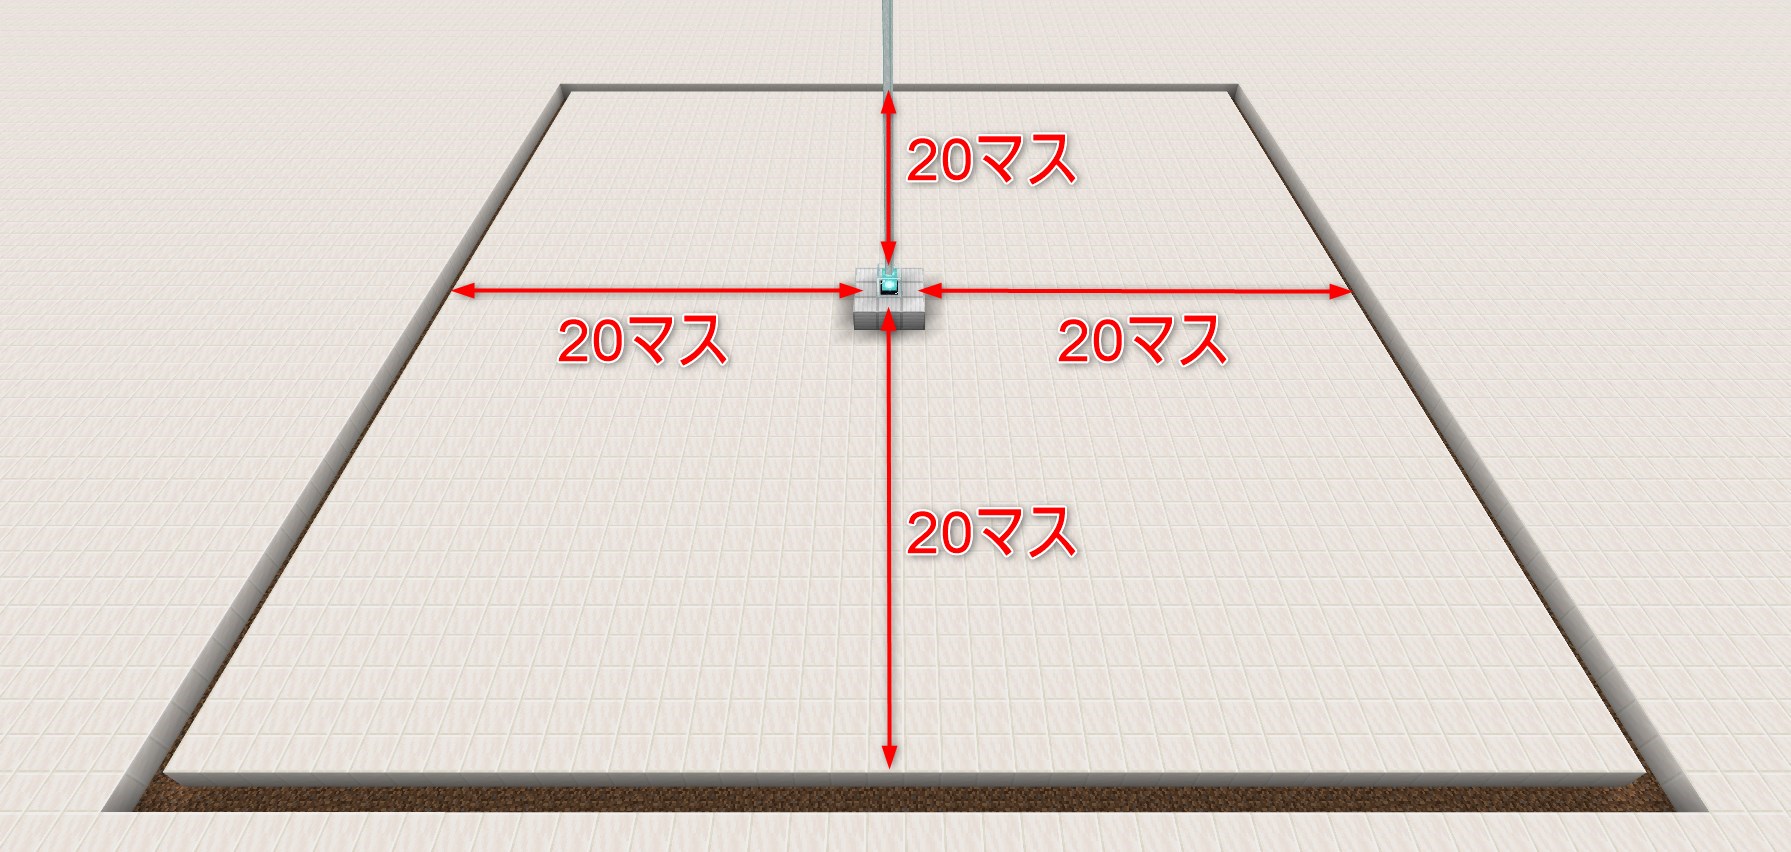 「ビーコン」から20マスの距離で囲まれている範囲（40×40マス）